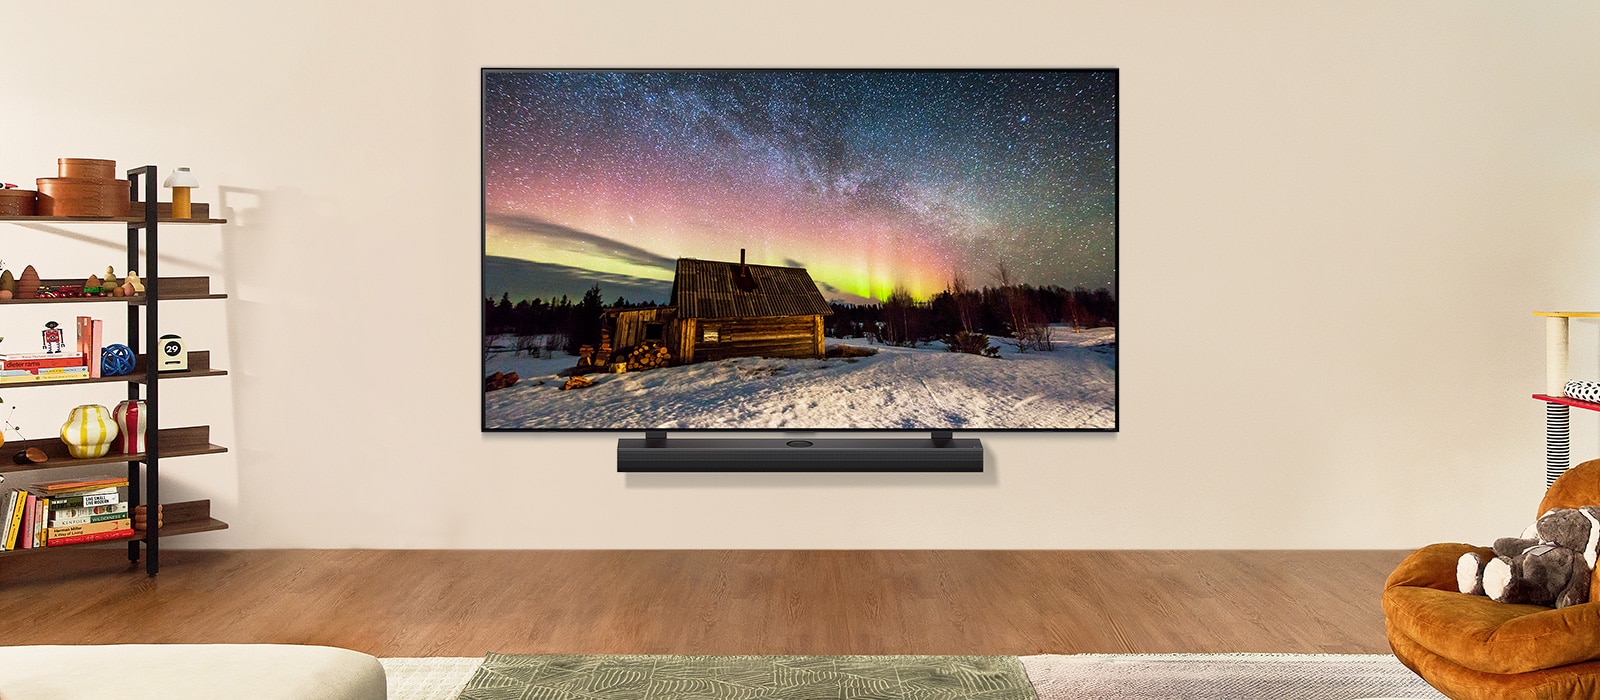 Le téléviseur de LG et la barre de son de LG dans une pièce moderne pendant le jour. Une image d'aurores boréales s’affiche à l'écran avec les niveaux de luminosité idéaux.